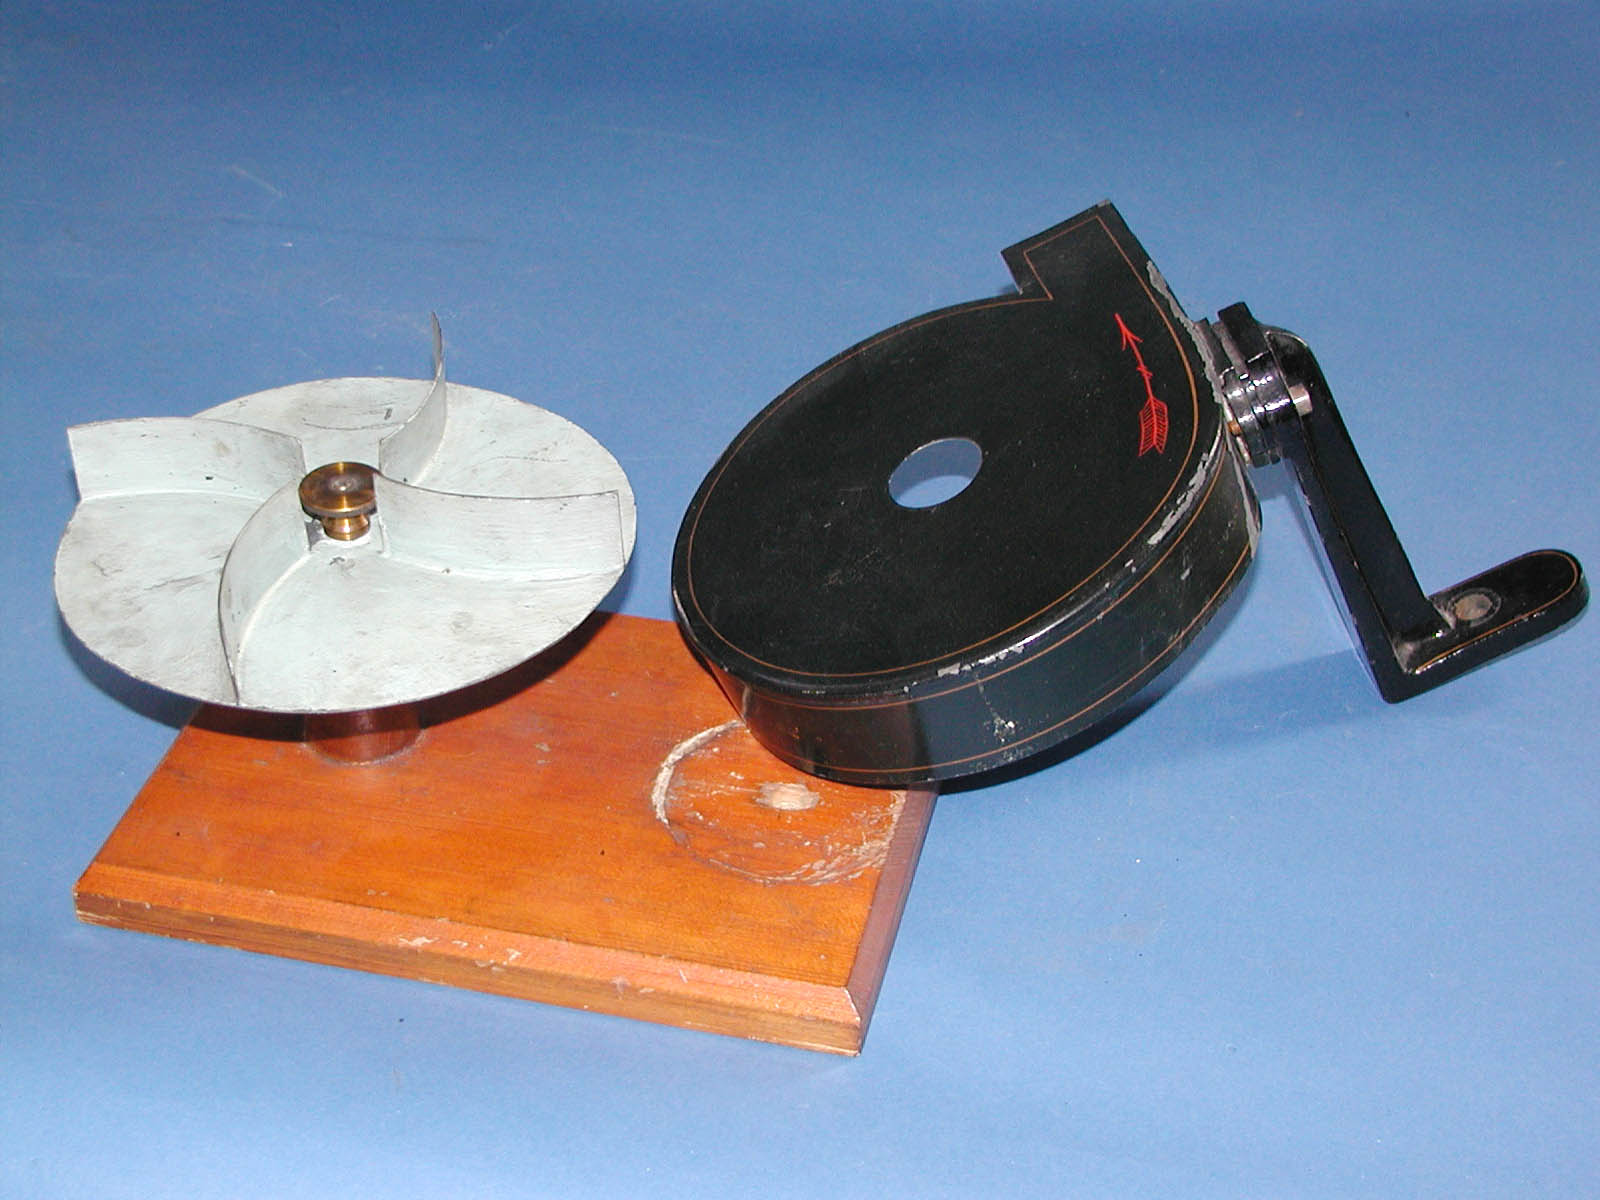 Model of a Ventilator